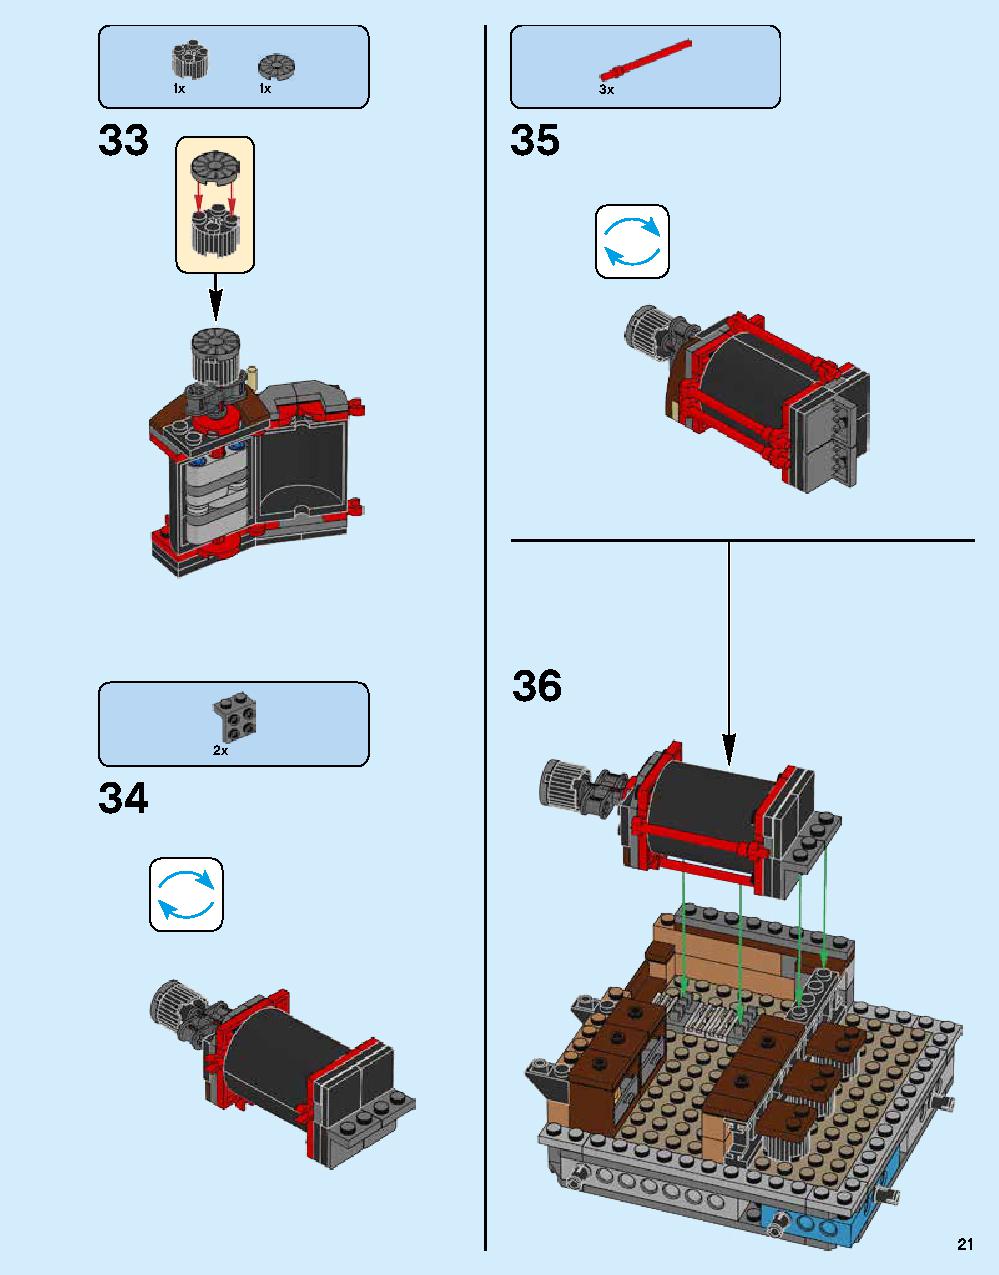 ニンジャゴー シティ 70620 レゴの商品情報 レゴの説明書・組立方法 21 page